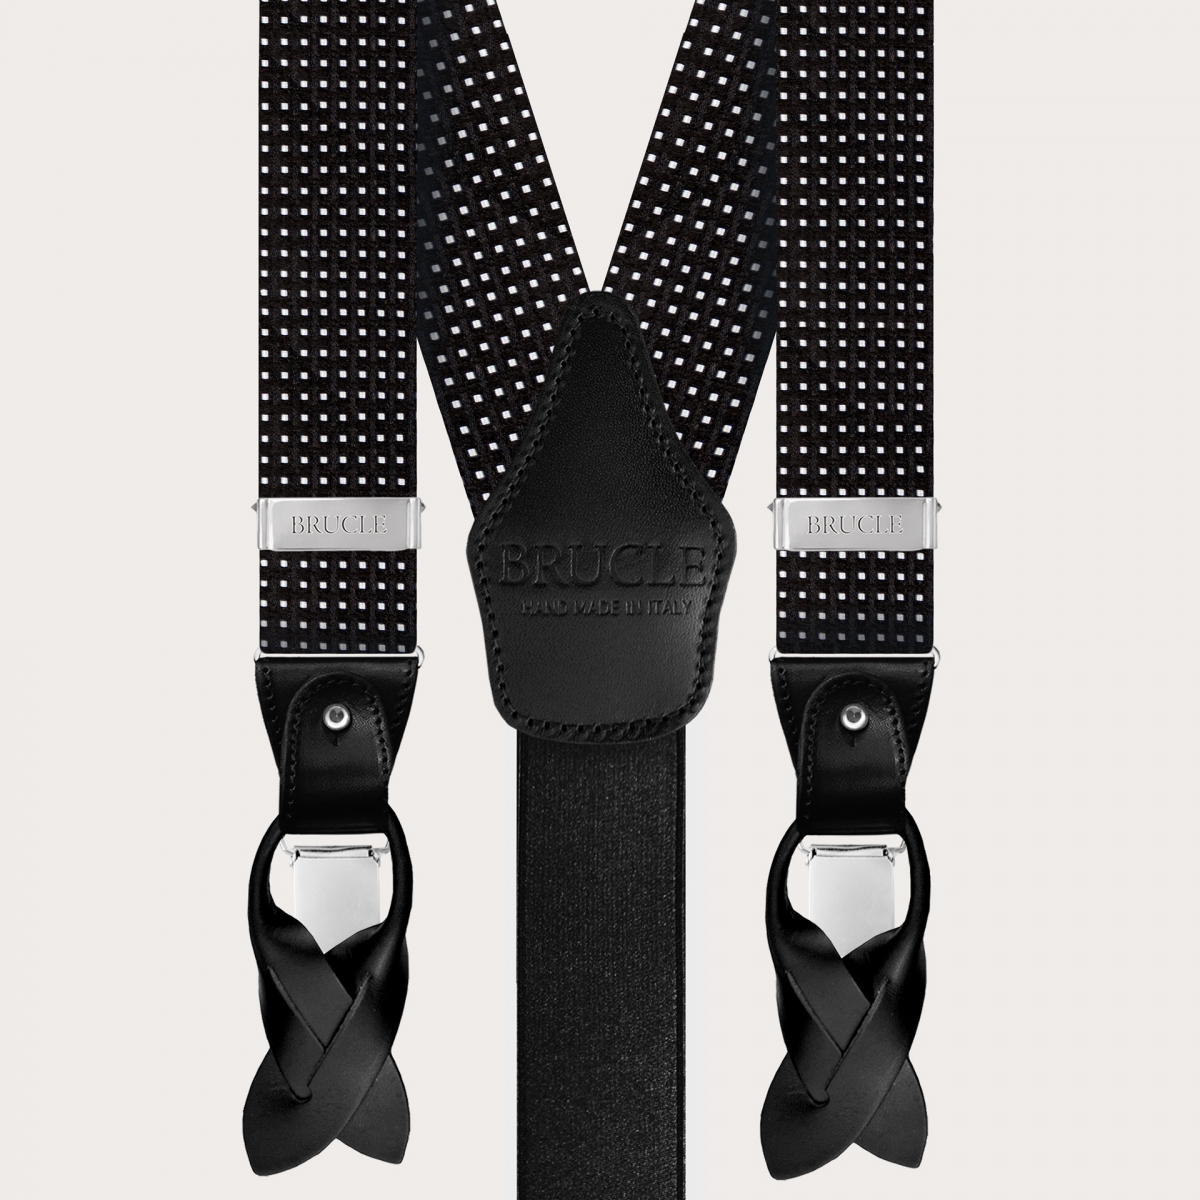 Bretelle e cravatta coordinate seta, fantasia nera puntaspillo